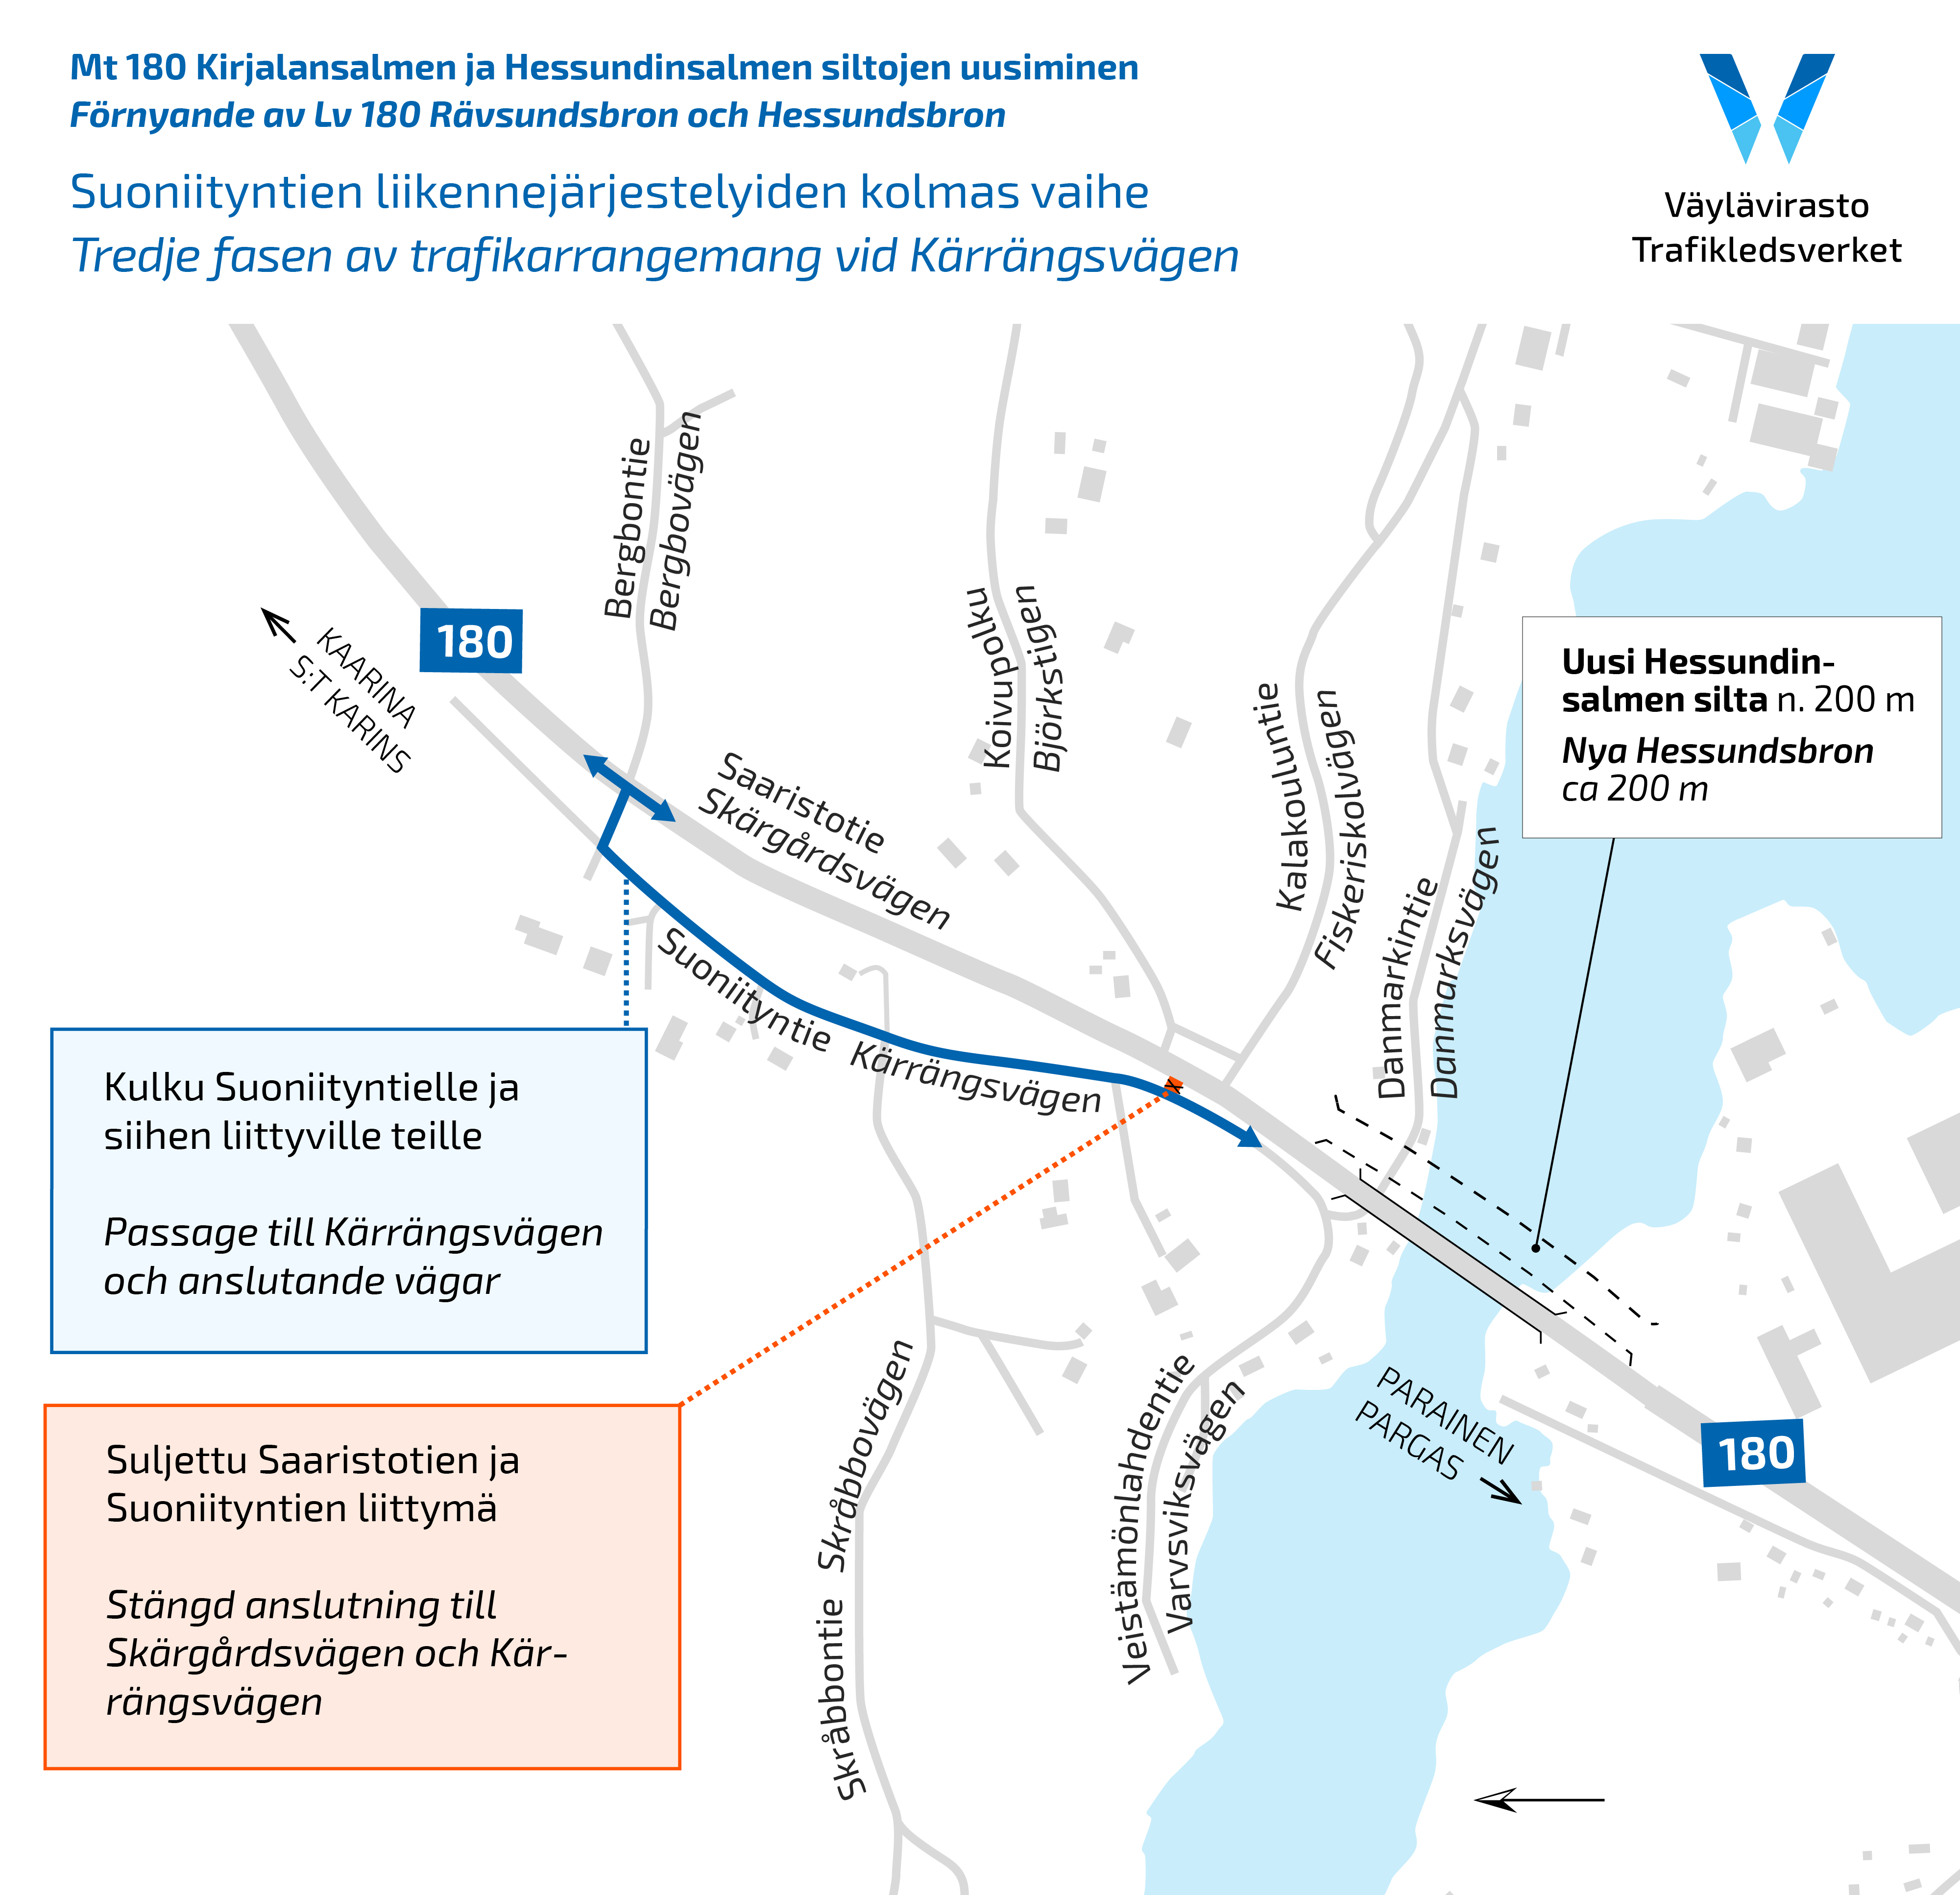 Karttakuva Suoniityntien alueesta ja liikennejärjestelyistä.